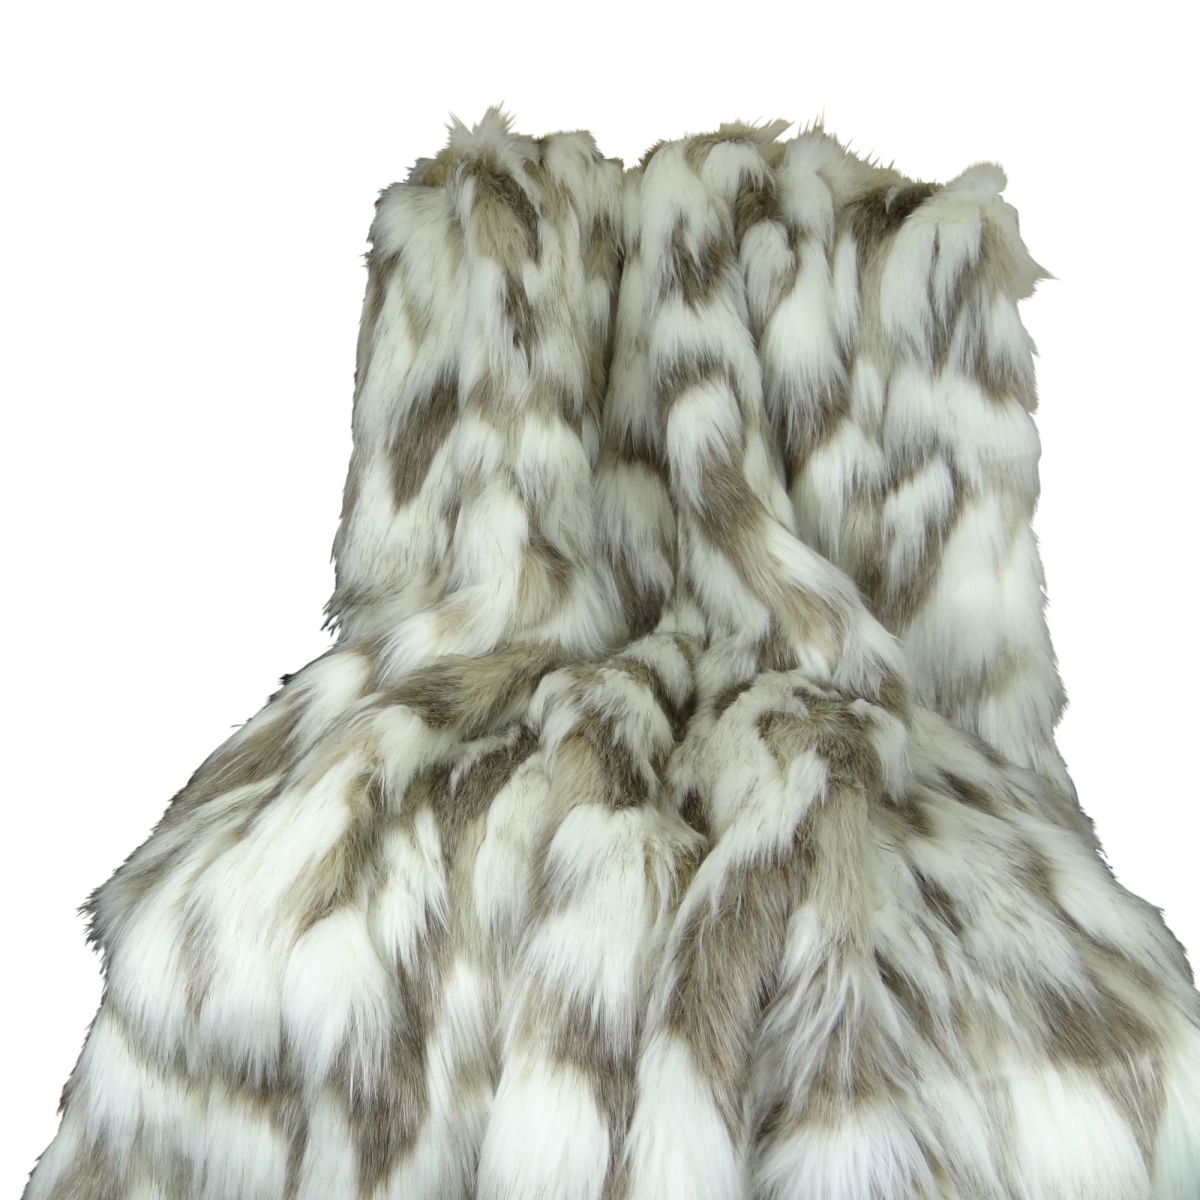 Pb16405-80x110t Tibet Faux Fur Blanket, Ivory & Gray - 80 X 110 In.